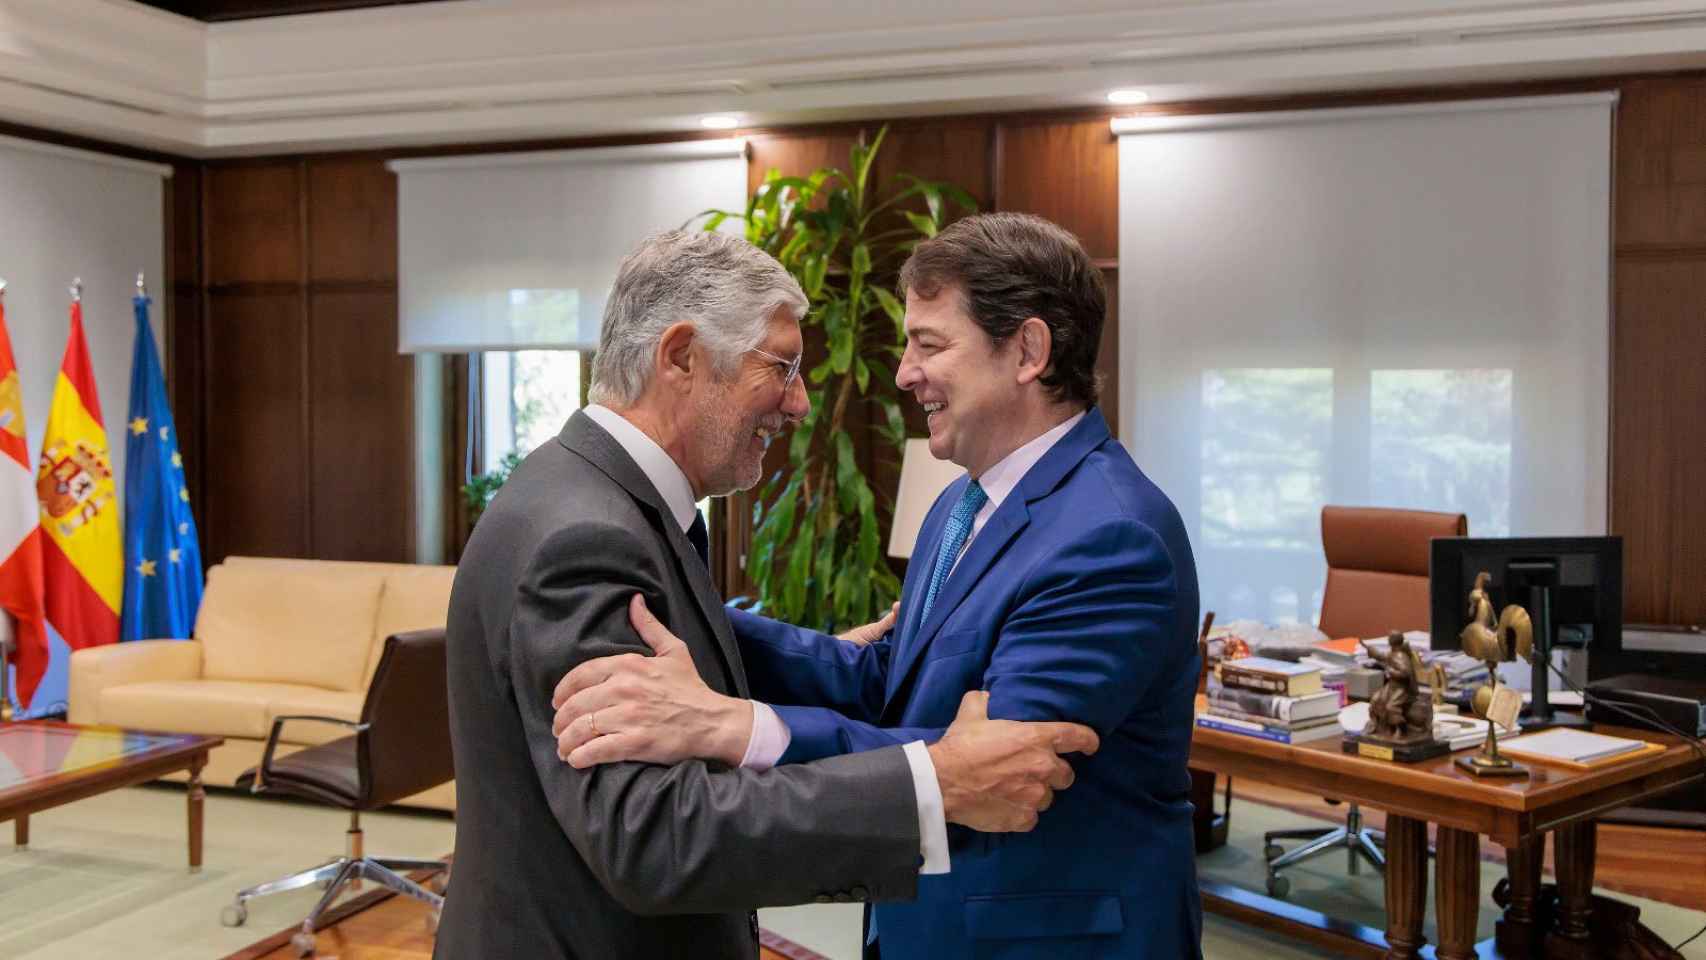 El presidente de la Junta de Castilla y León, Alfonso Fernández Mañueco, ha mantenido hoy un encuentro con el Embajador de Portugal, Joâo Mira Gomes